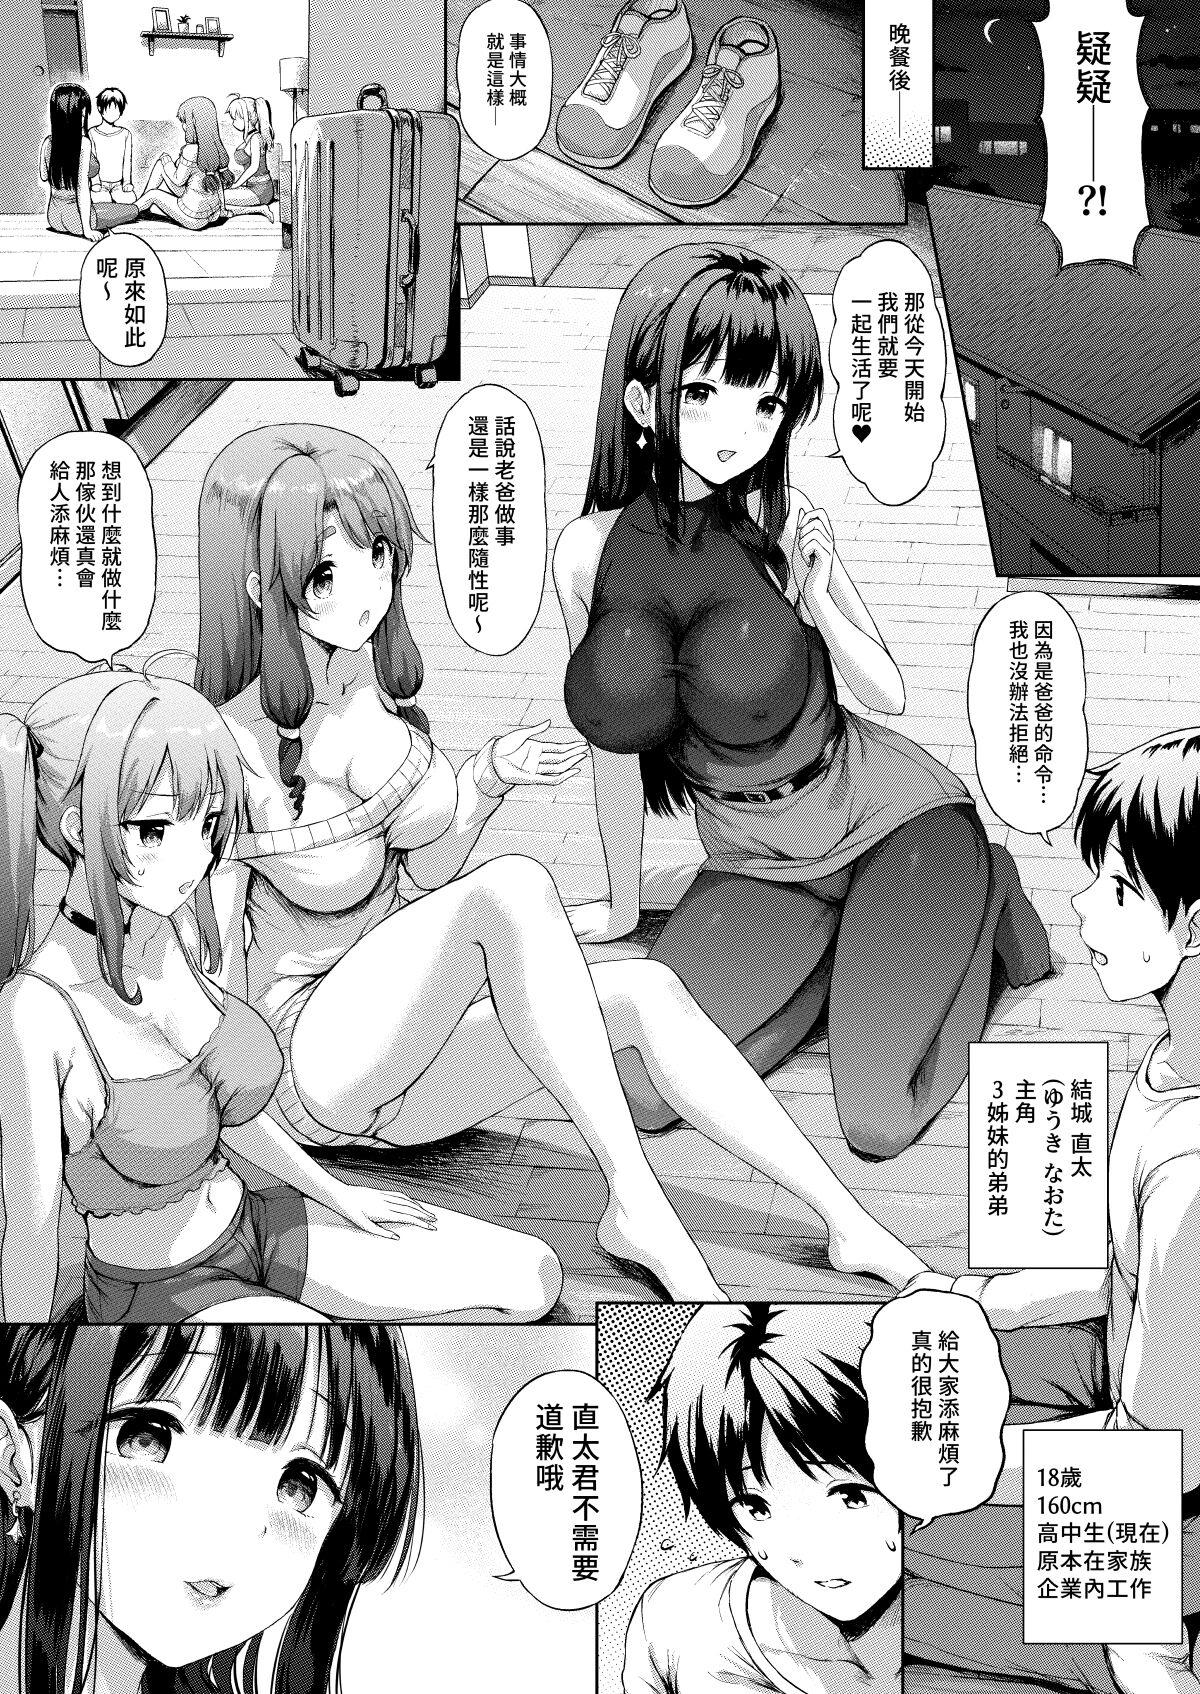 Sanshimai Manga ep1 p1-20 4